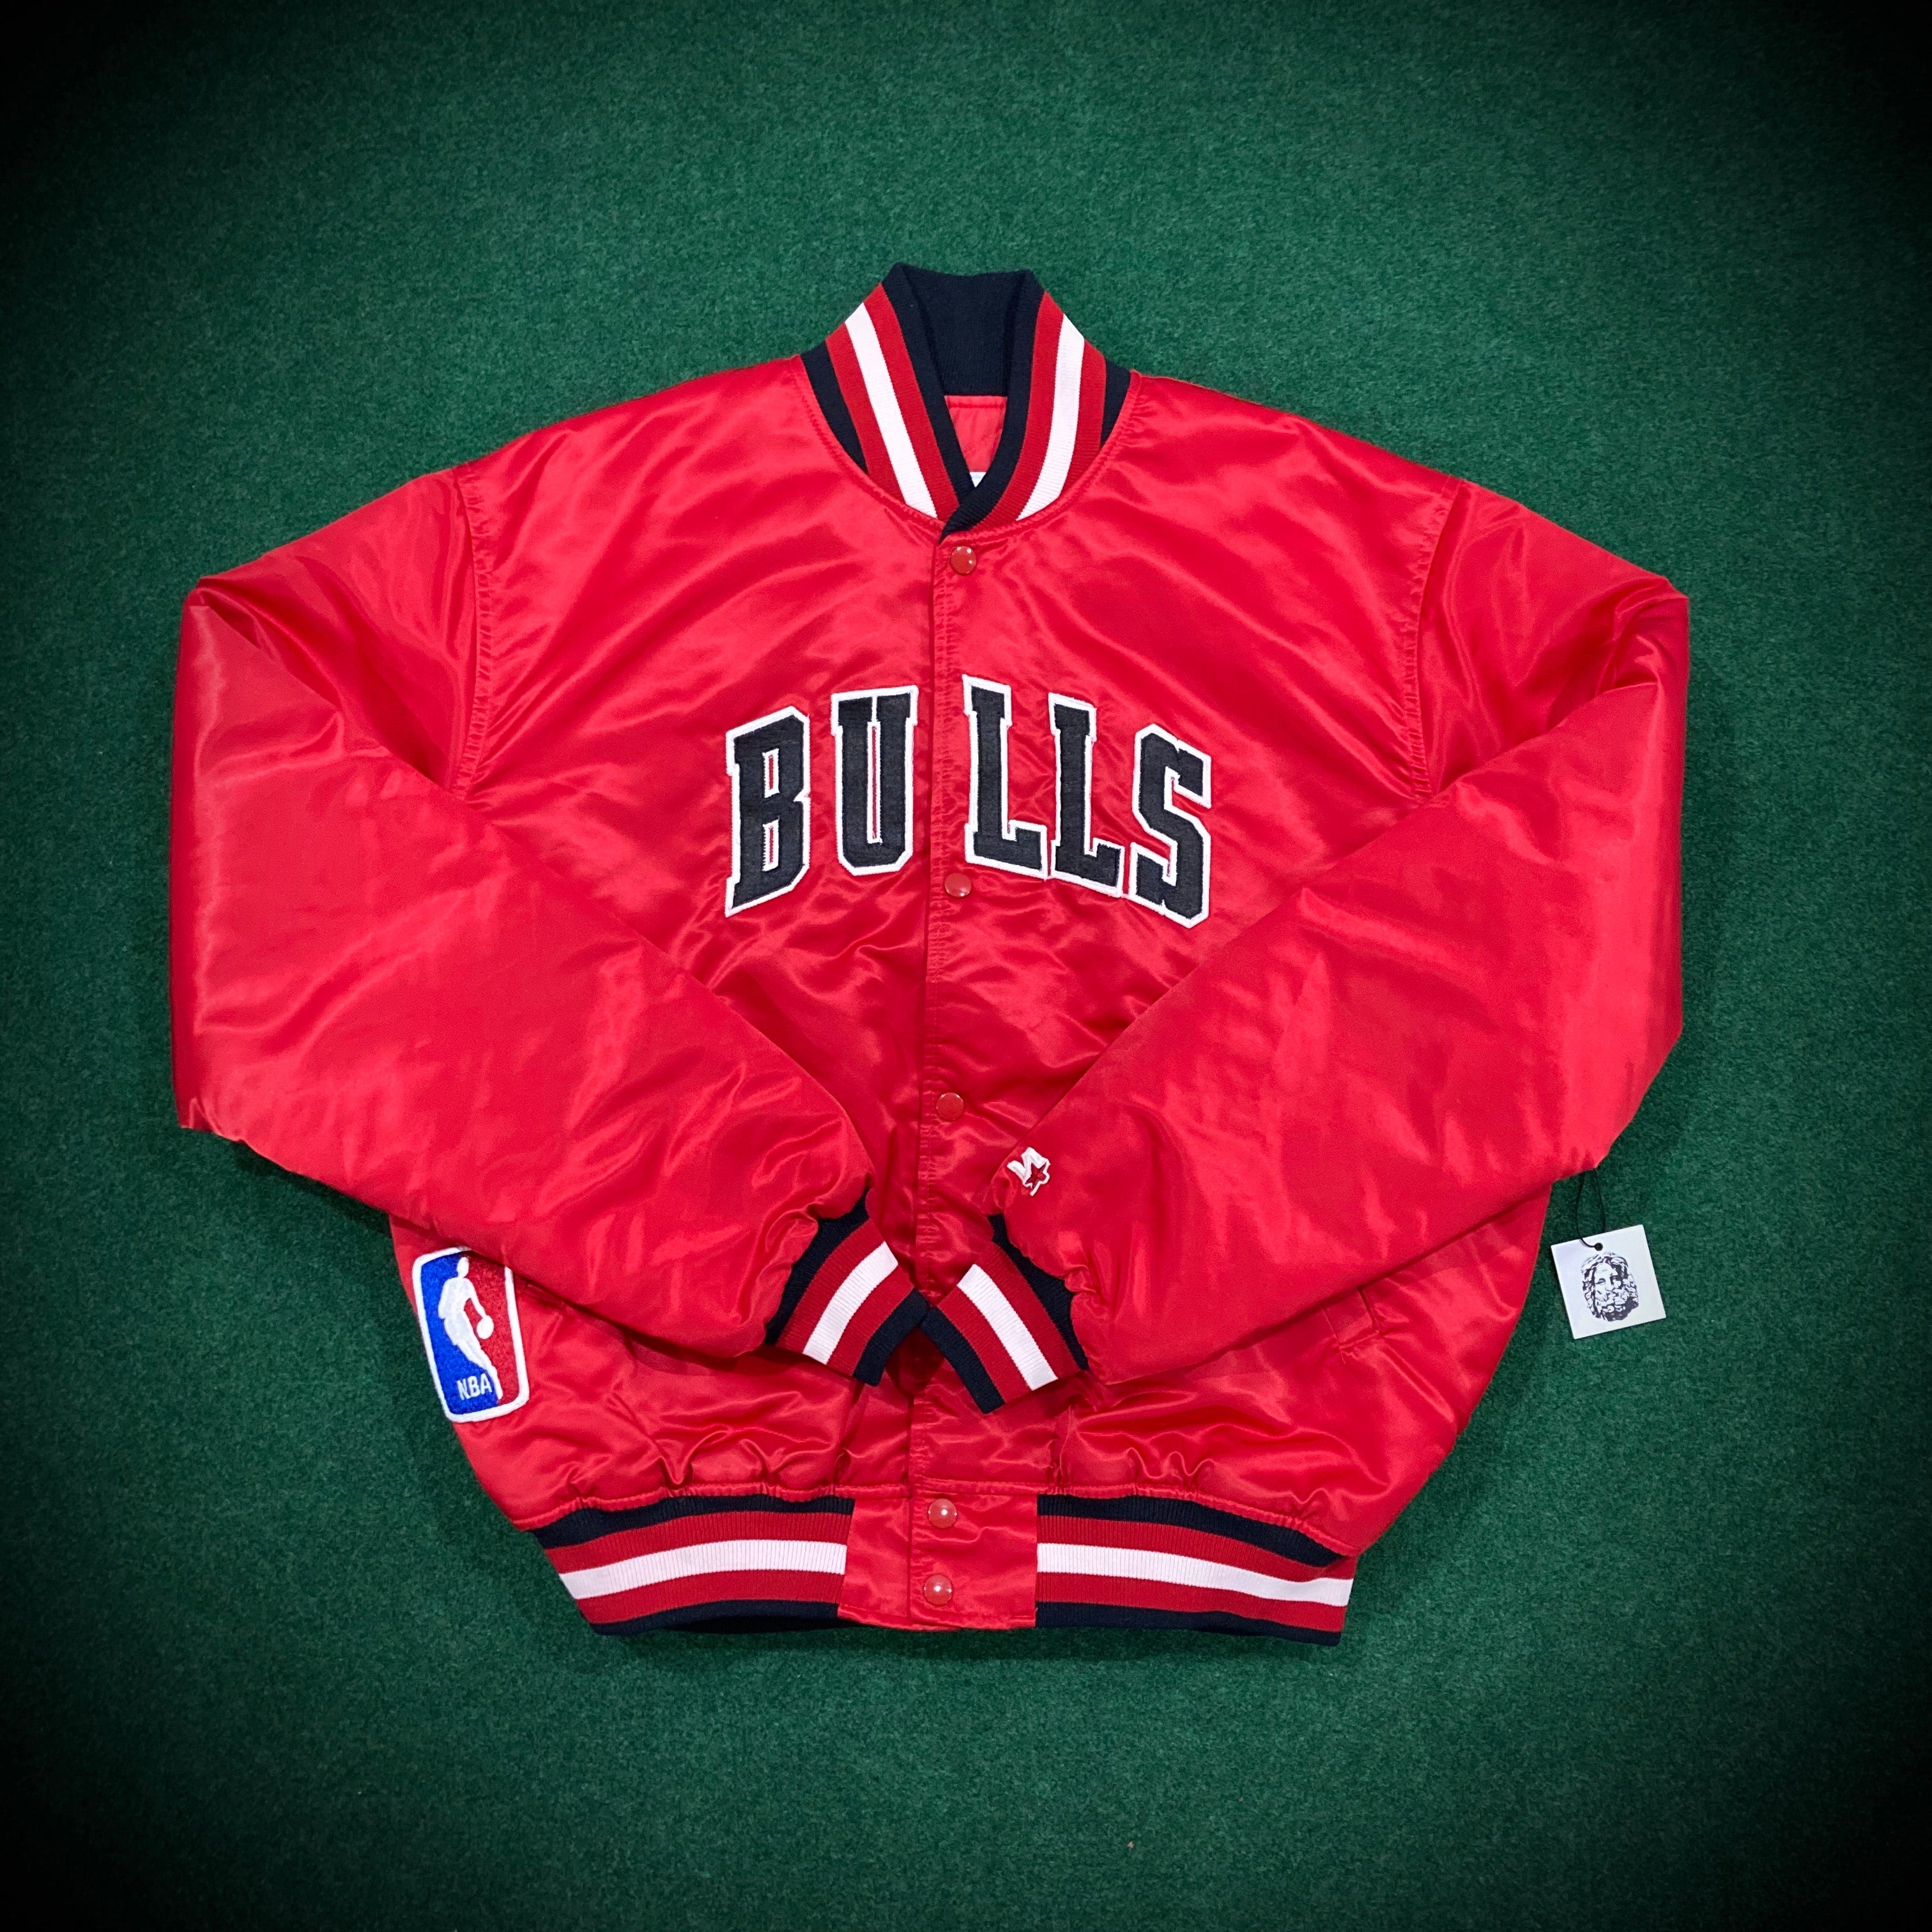 chicago bulls jacket vintage